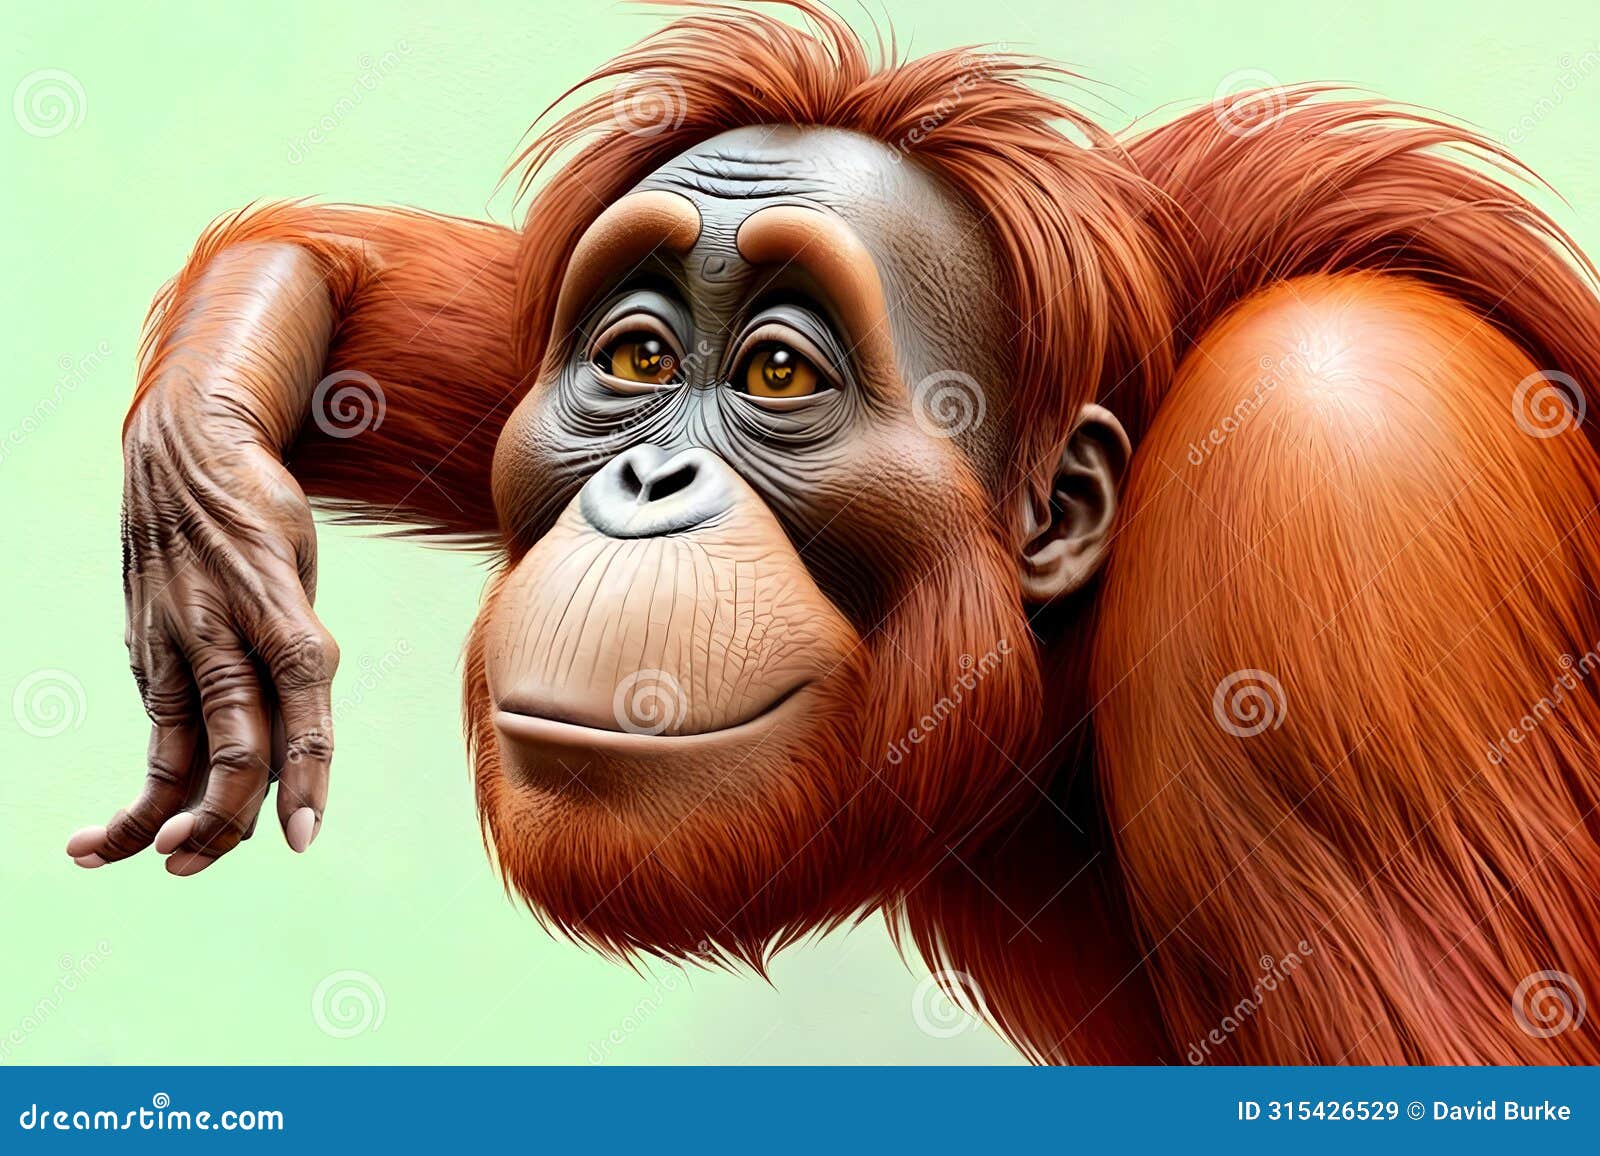 cartoon comic smile orangutan primate entertainer creature face entertainment